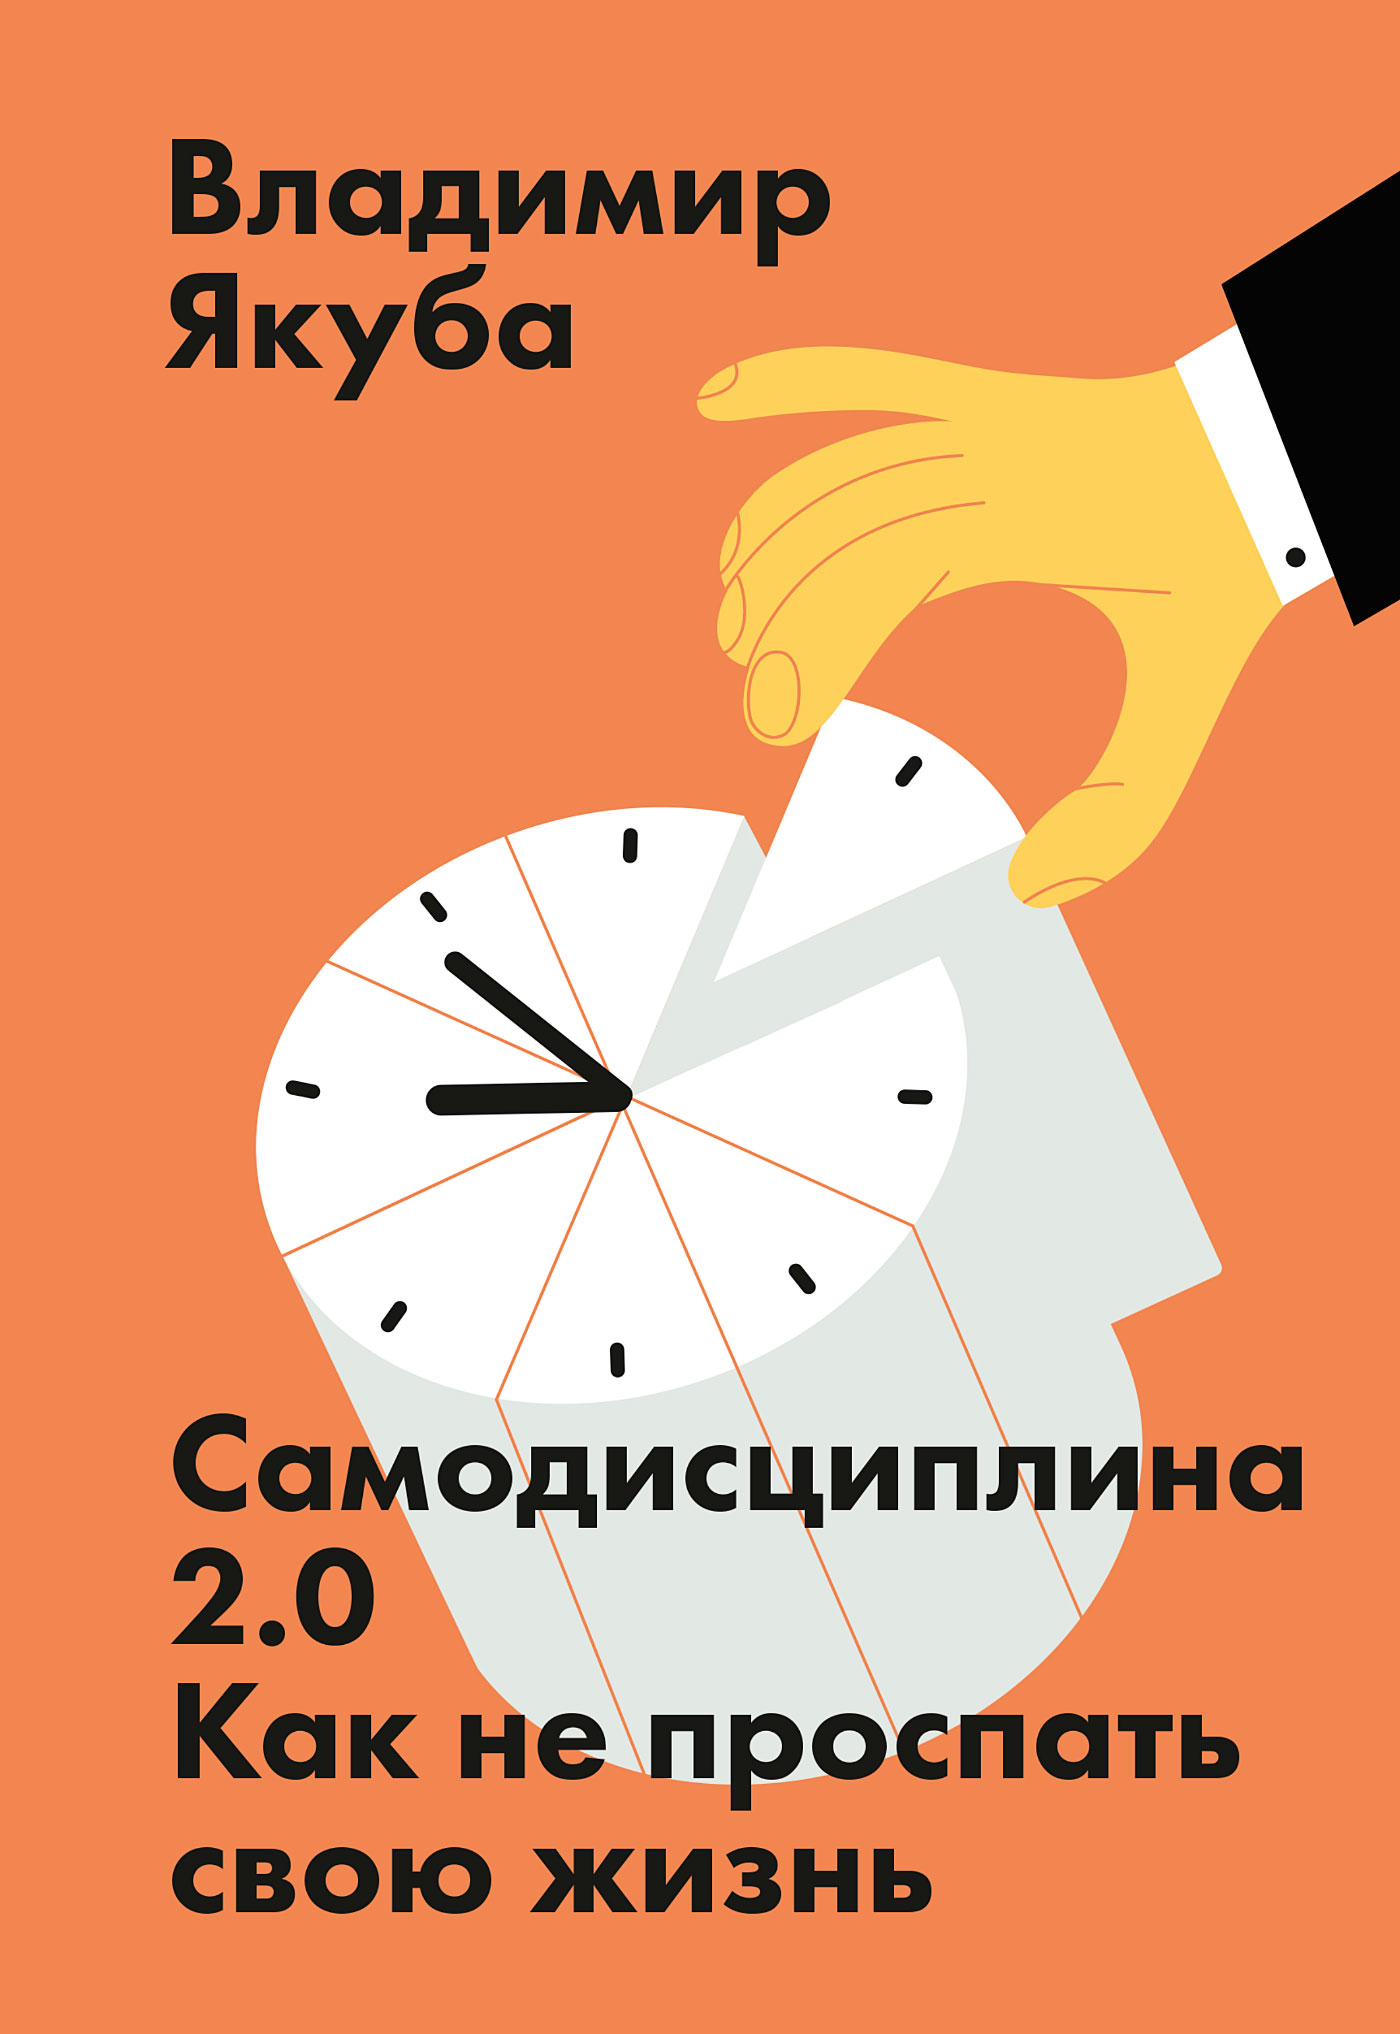 Книга Самодисциплина 2.0 из серии , созданная Владимир Якуба, может относится к жанру Самосовершенствование, Личностный рост. Стоимость электронной книги Самодисциплина 2.0 с идентификатором 43624534 составляет 399.00 руб.